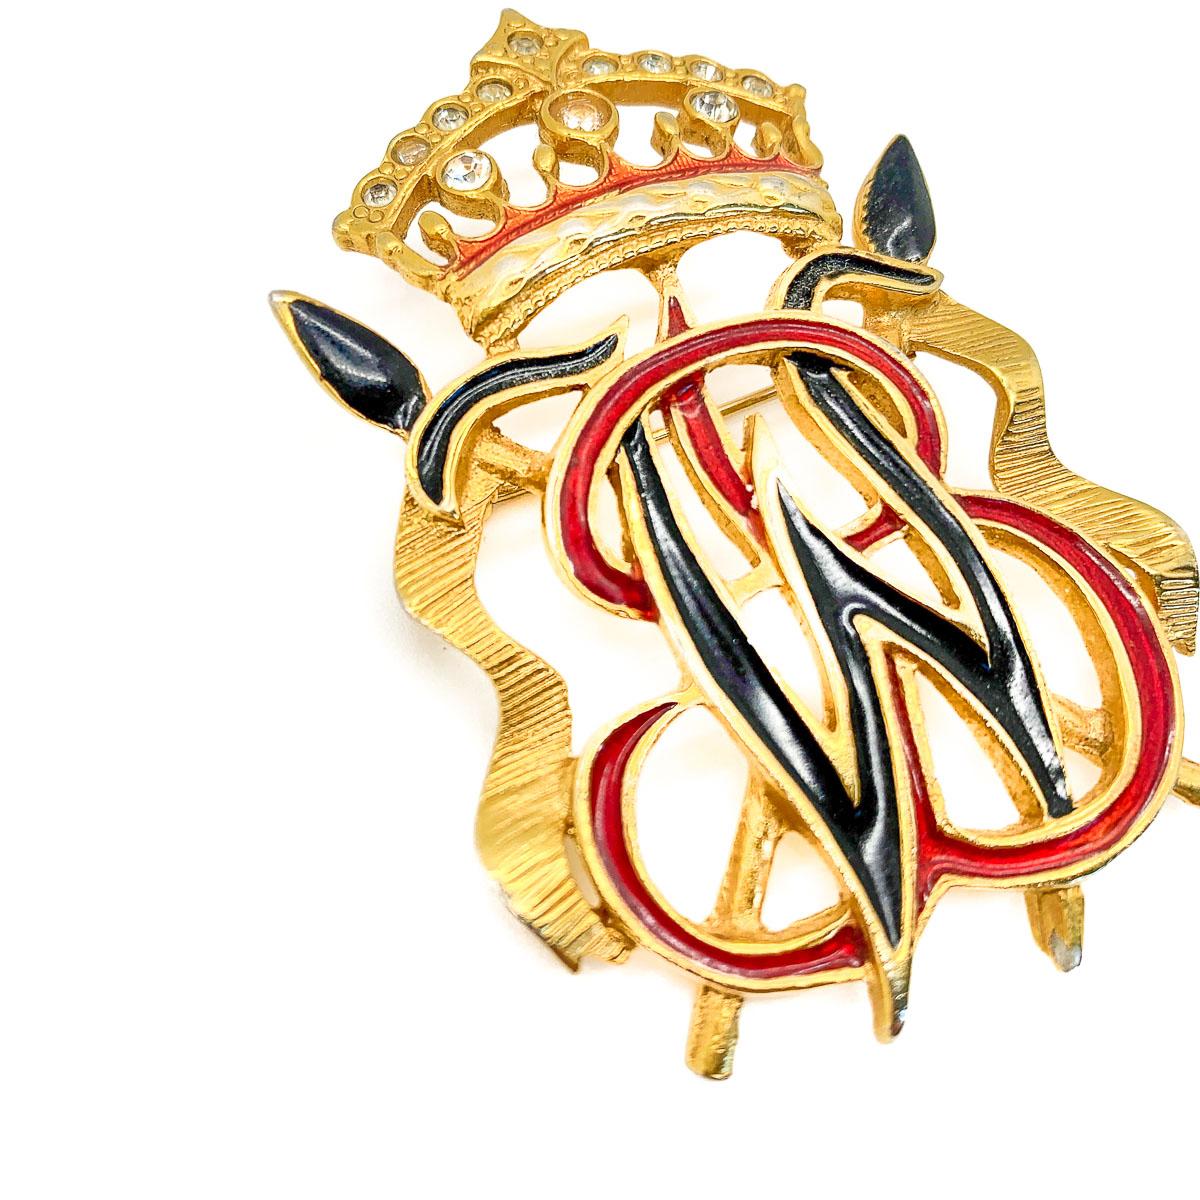 Eine heraldische Brosche von Butler & Wilson aus den 1980er Jahren. Er ist aus vergoldetem Metall gefertigt und mit Emaille und Strasssteinen verziert, die die ineinander verschlungenen Initialen des weltberühmten Schmuckunternehmens zieren. In sehr